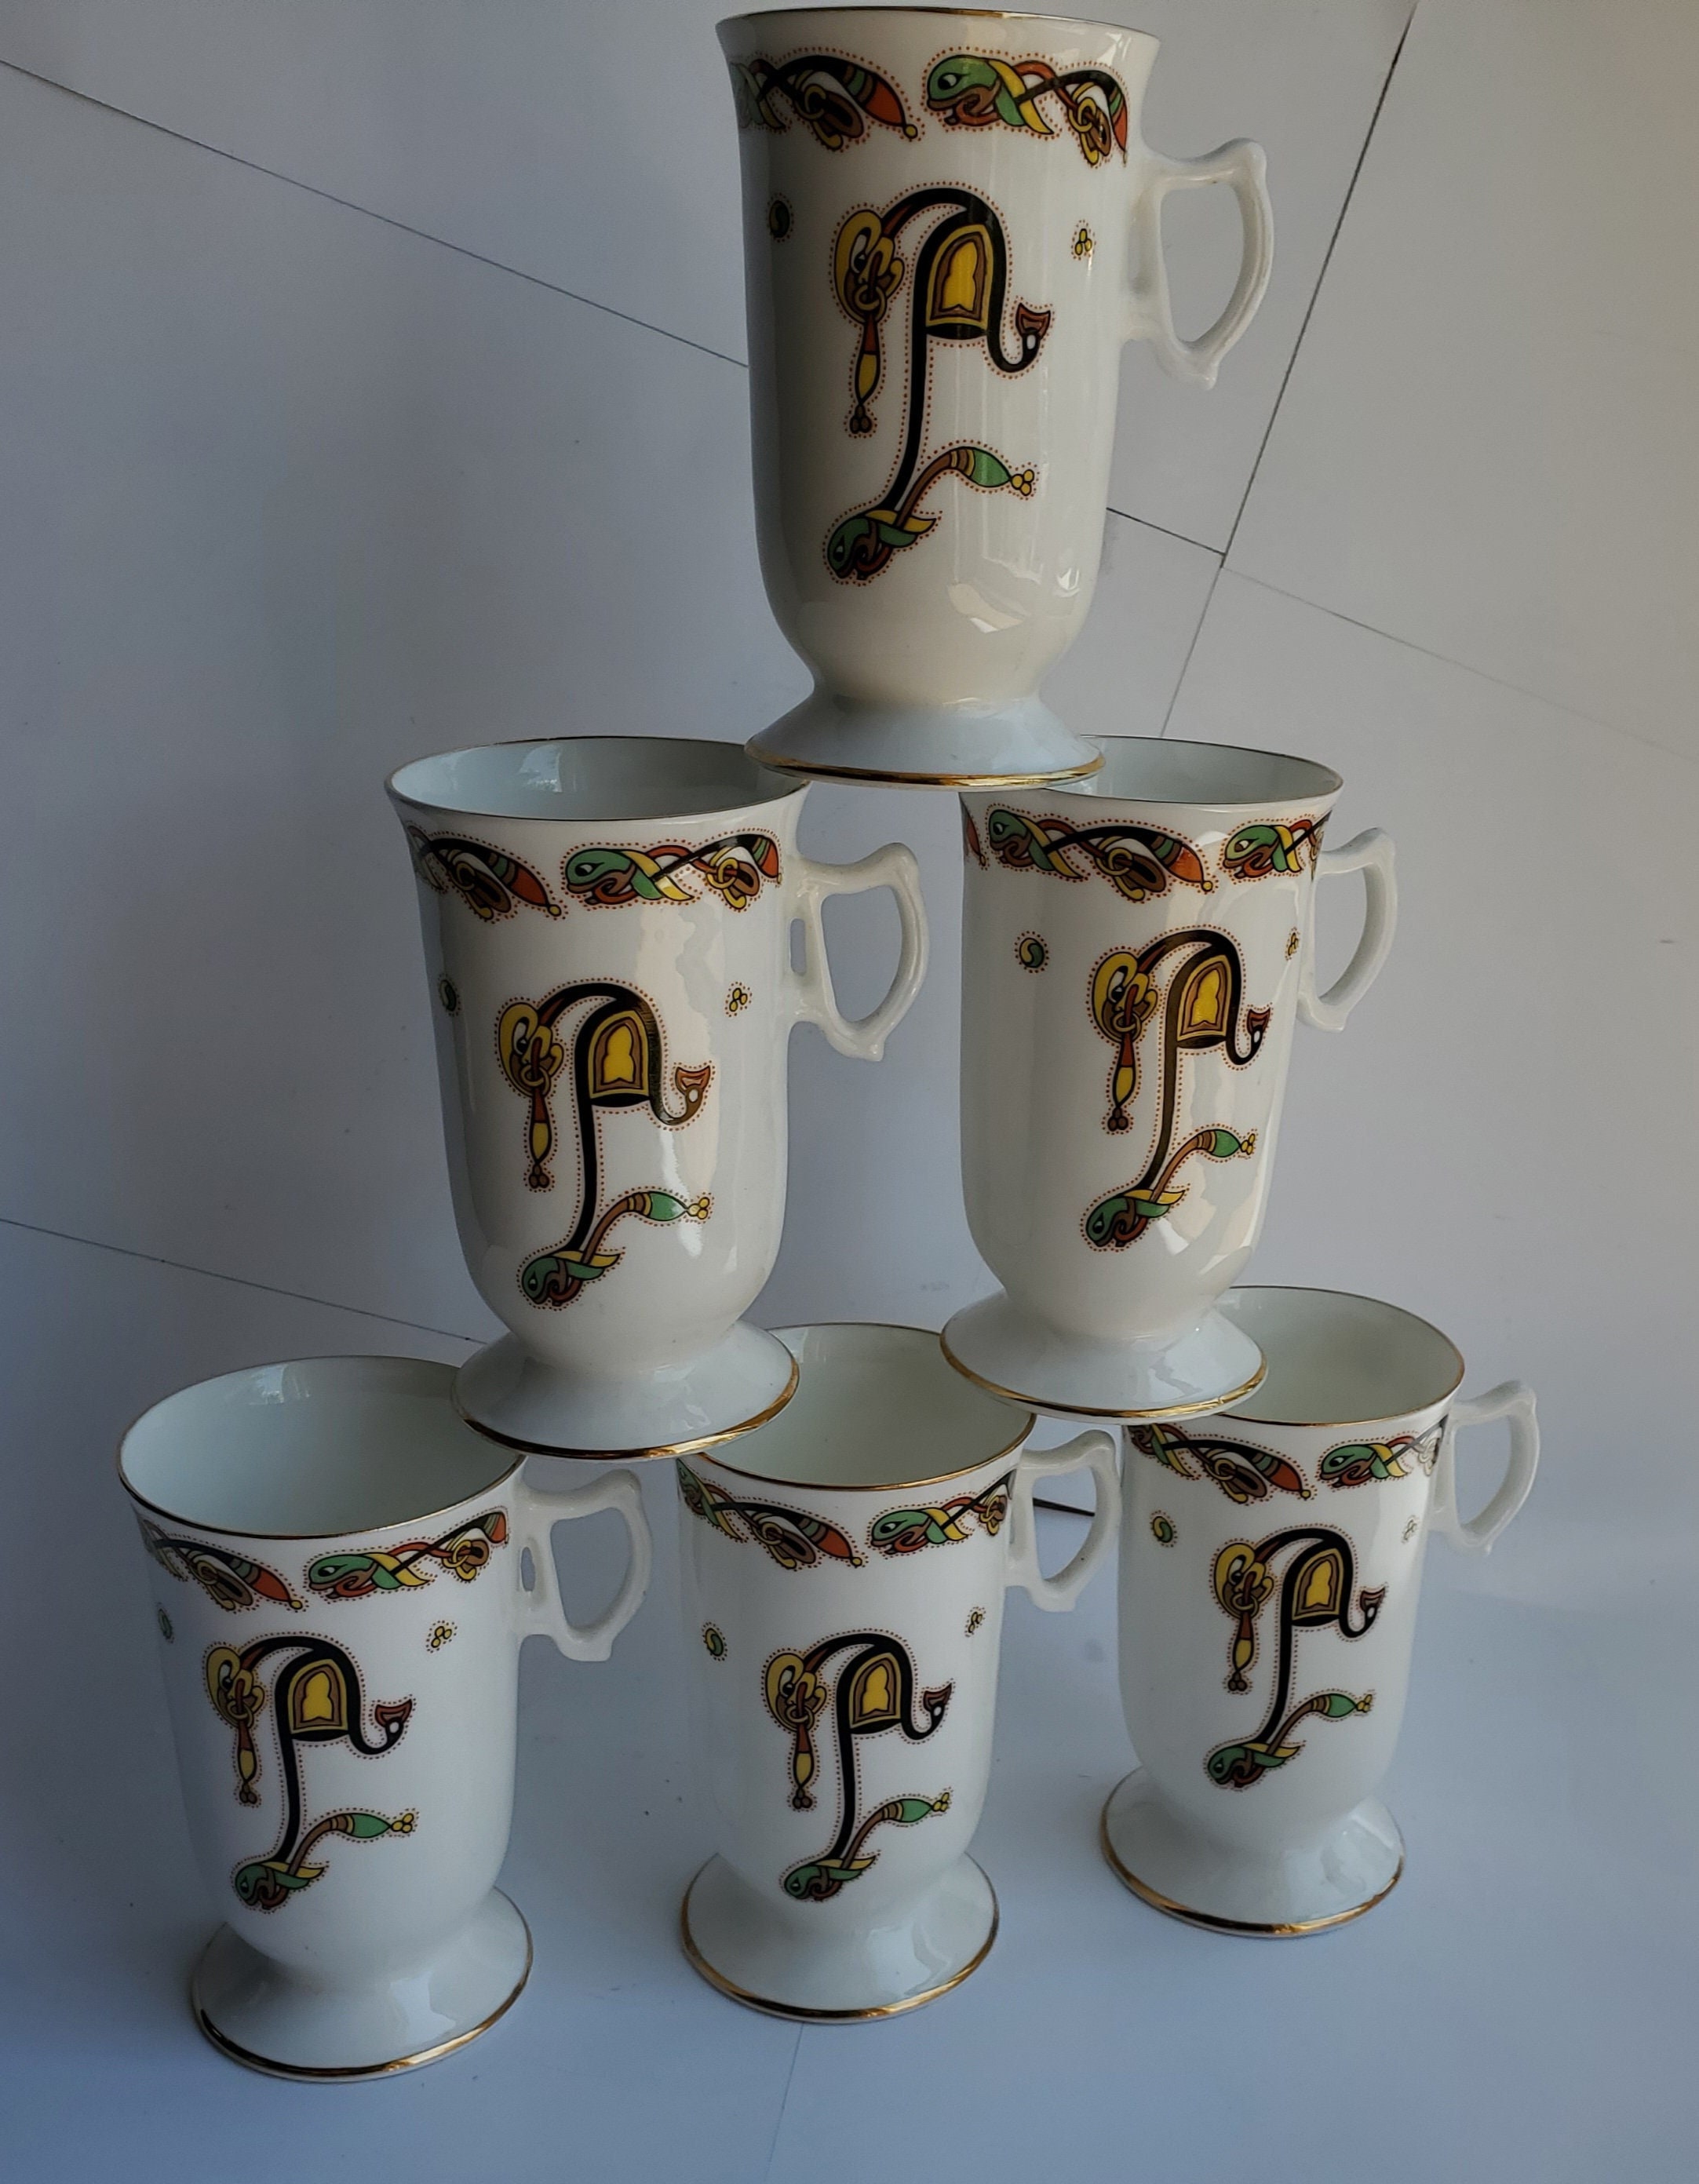 Ireland Shamrock Mug Coffee Cup 370 ml/12.5 fl. oz by Royal Tara